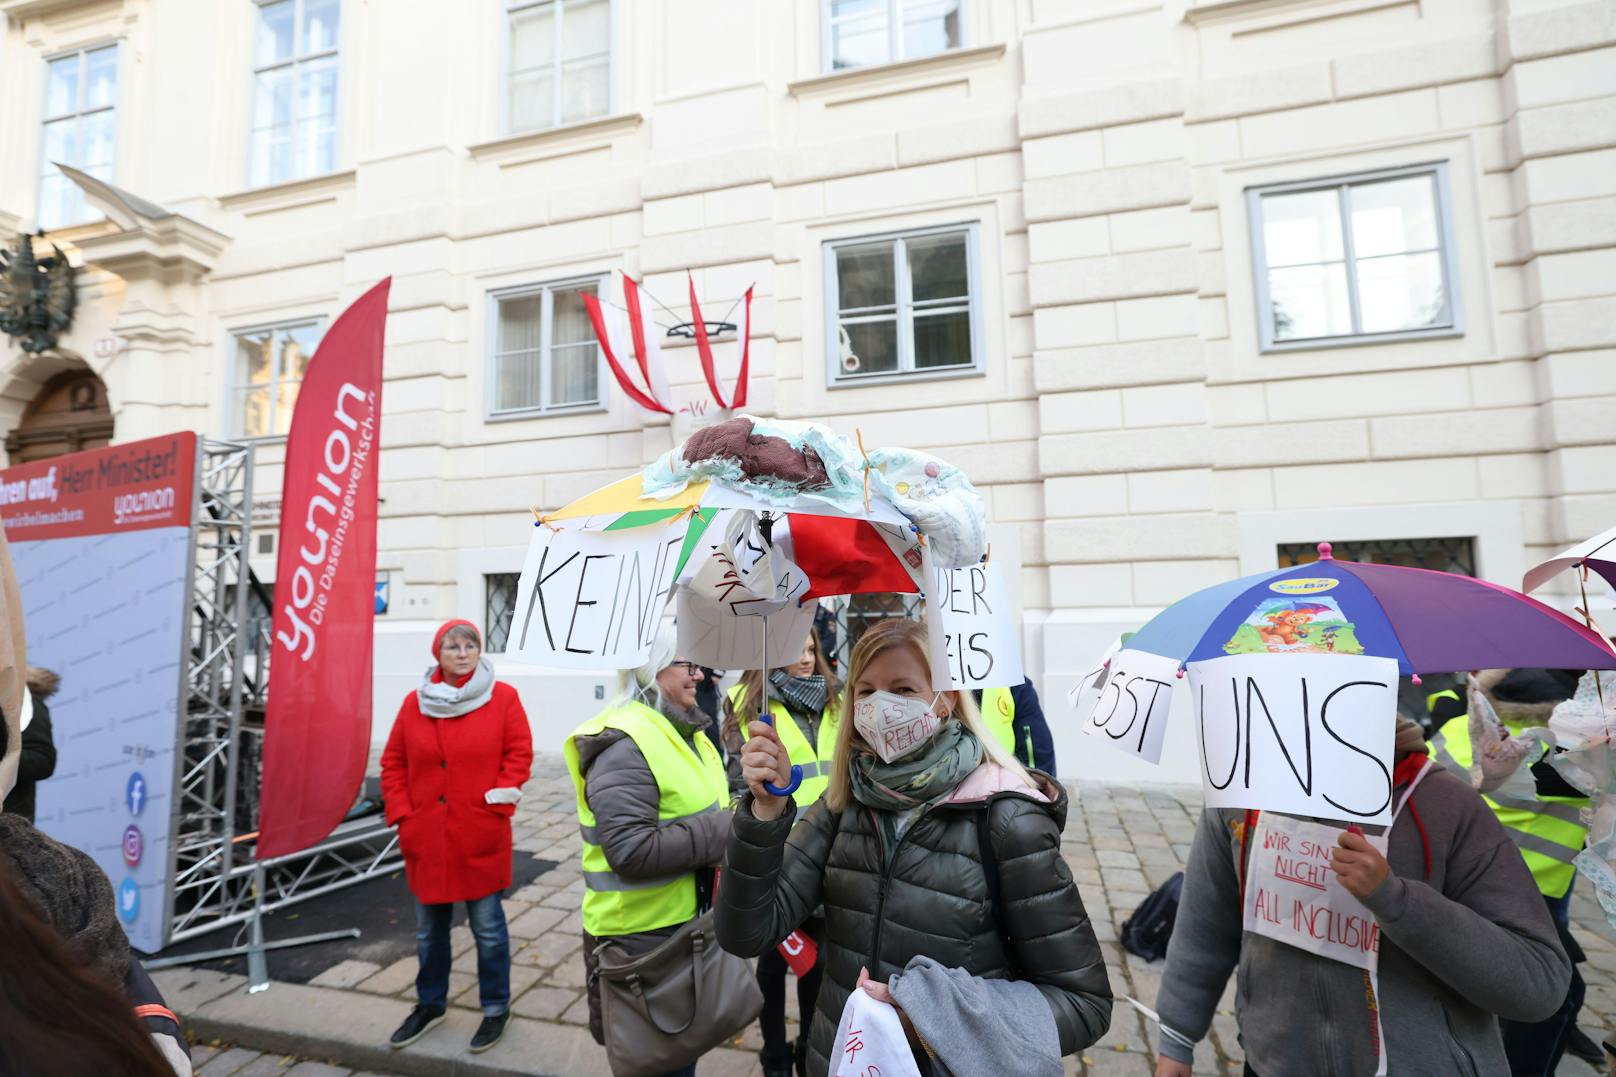 Rund 1.000 Kindergartenpädagogen der städtischen Kindergärten und Horte sowie Gewerkschaftsvertreter demonstrierten am Donnerstag in Wien für bessere Arbeitsbedingungen.